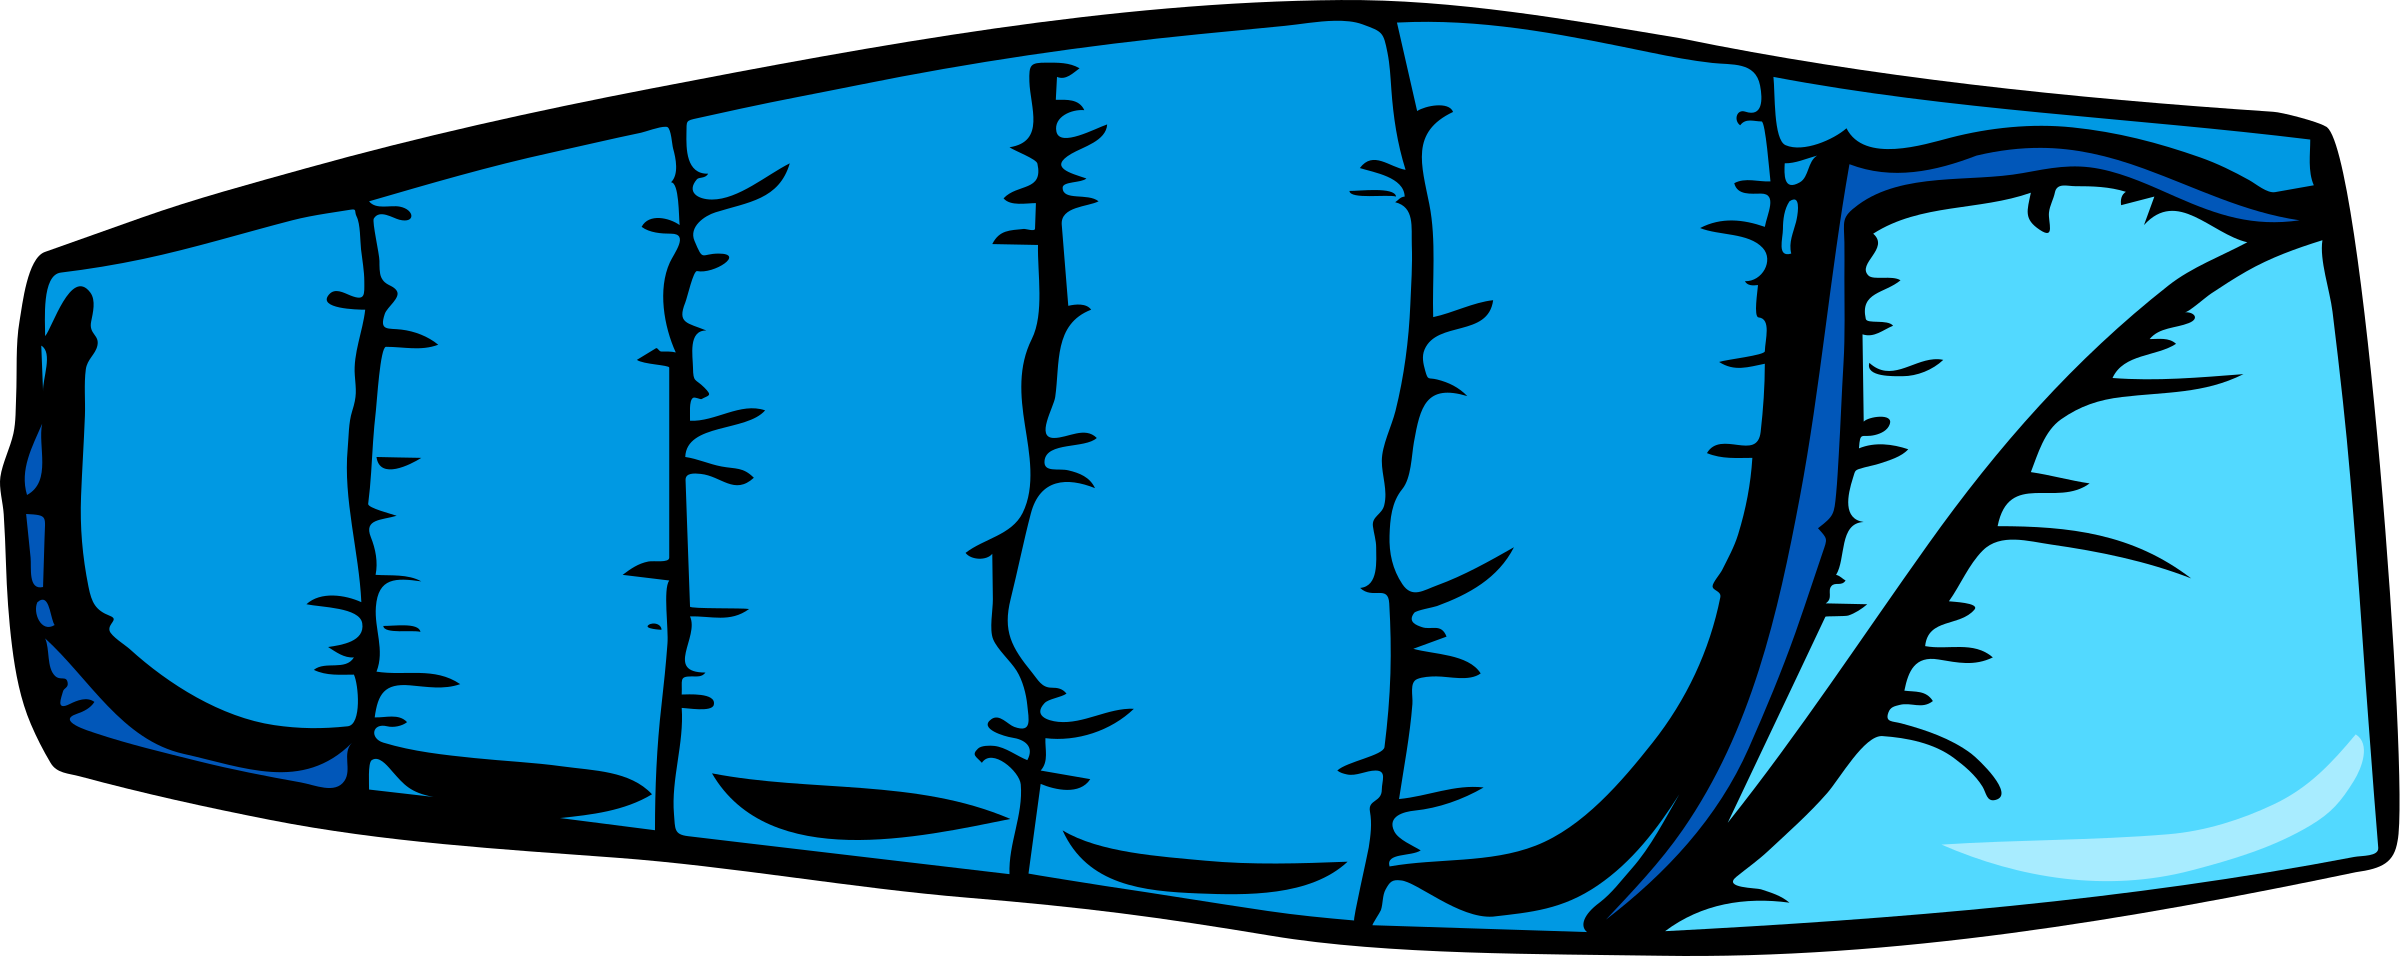 Blue sleeping bag vector clip